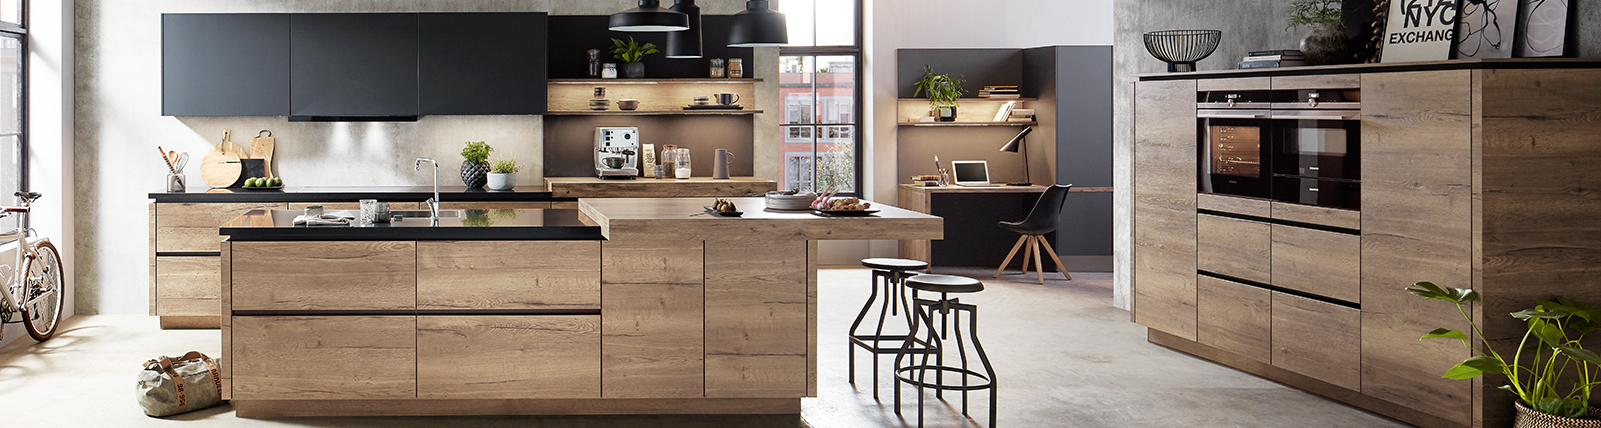 Moderne Küche mit Holzschränken, Insel, hochwertigen Geräten und schicker städtischer Dekoration in einem offenen, luftigen Raum.